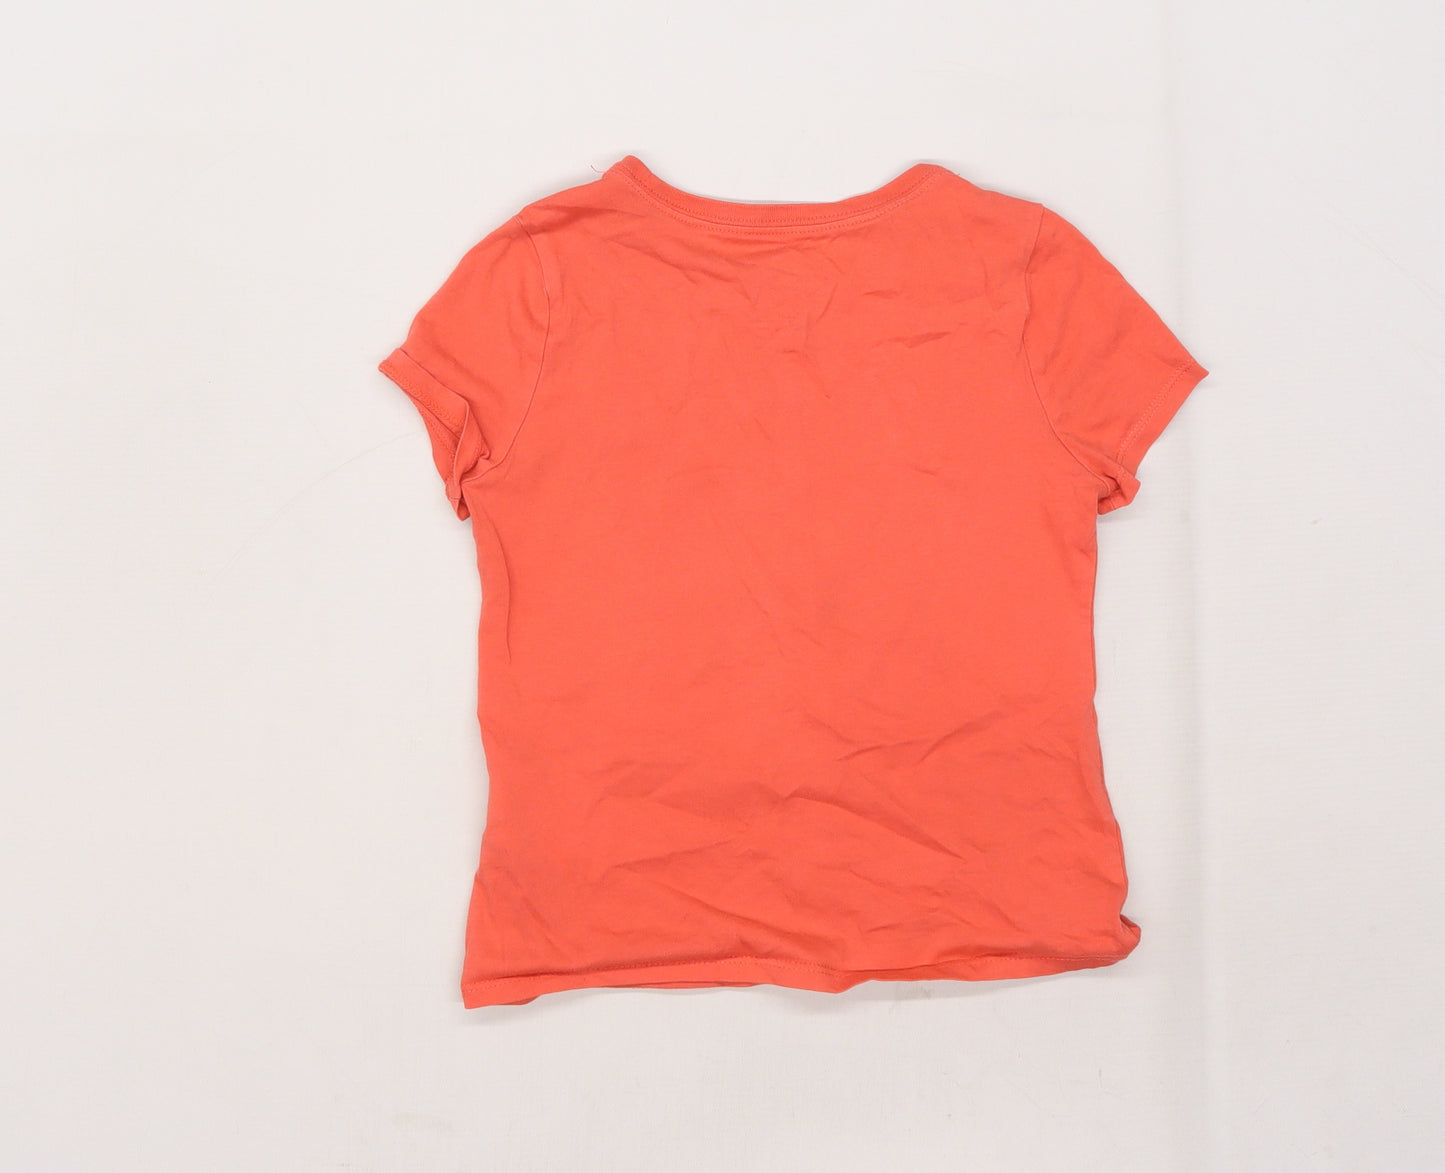 Nike Girls Pink   Basic T-Shirt Size 6-7 Years  - slogan